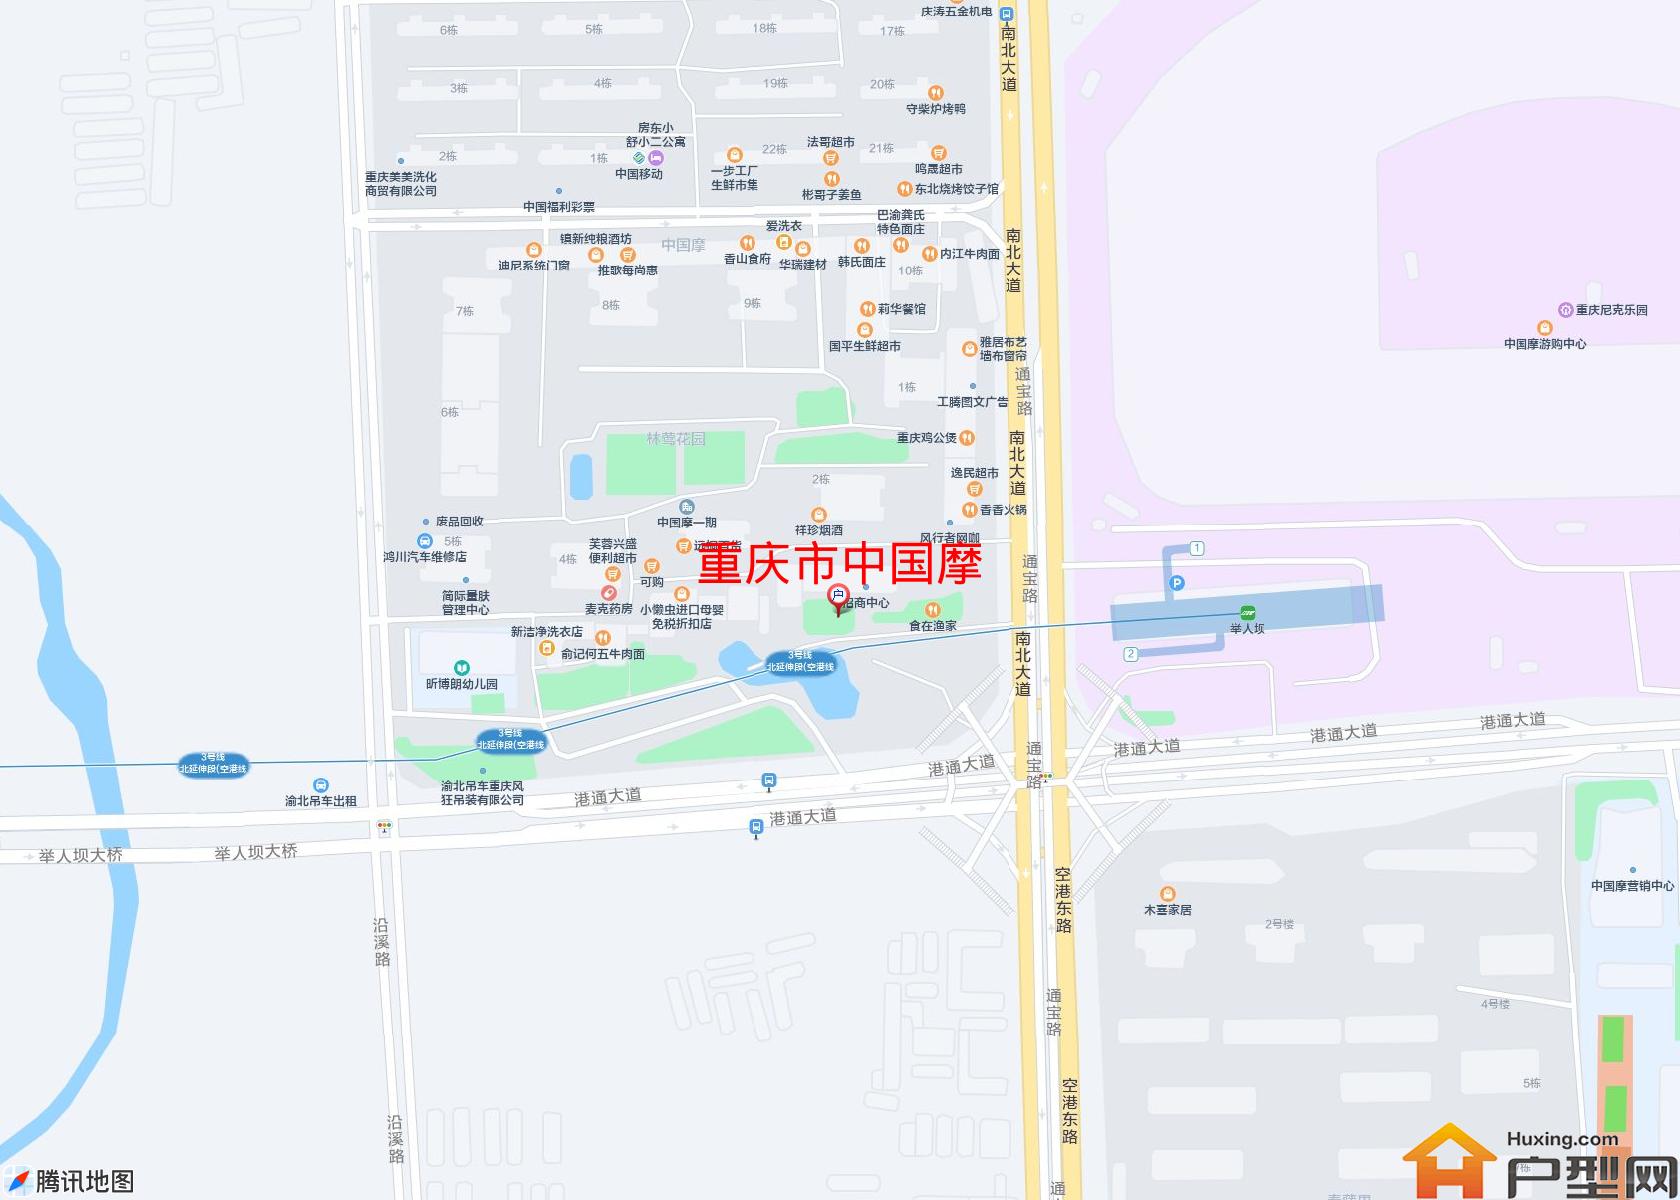 中国摩小区 - 户型网